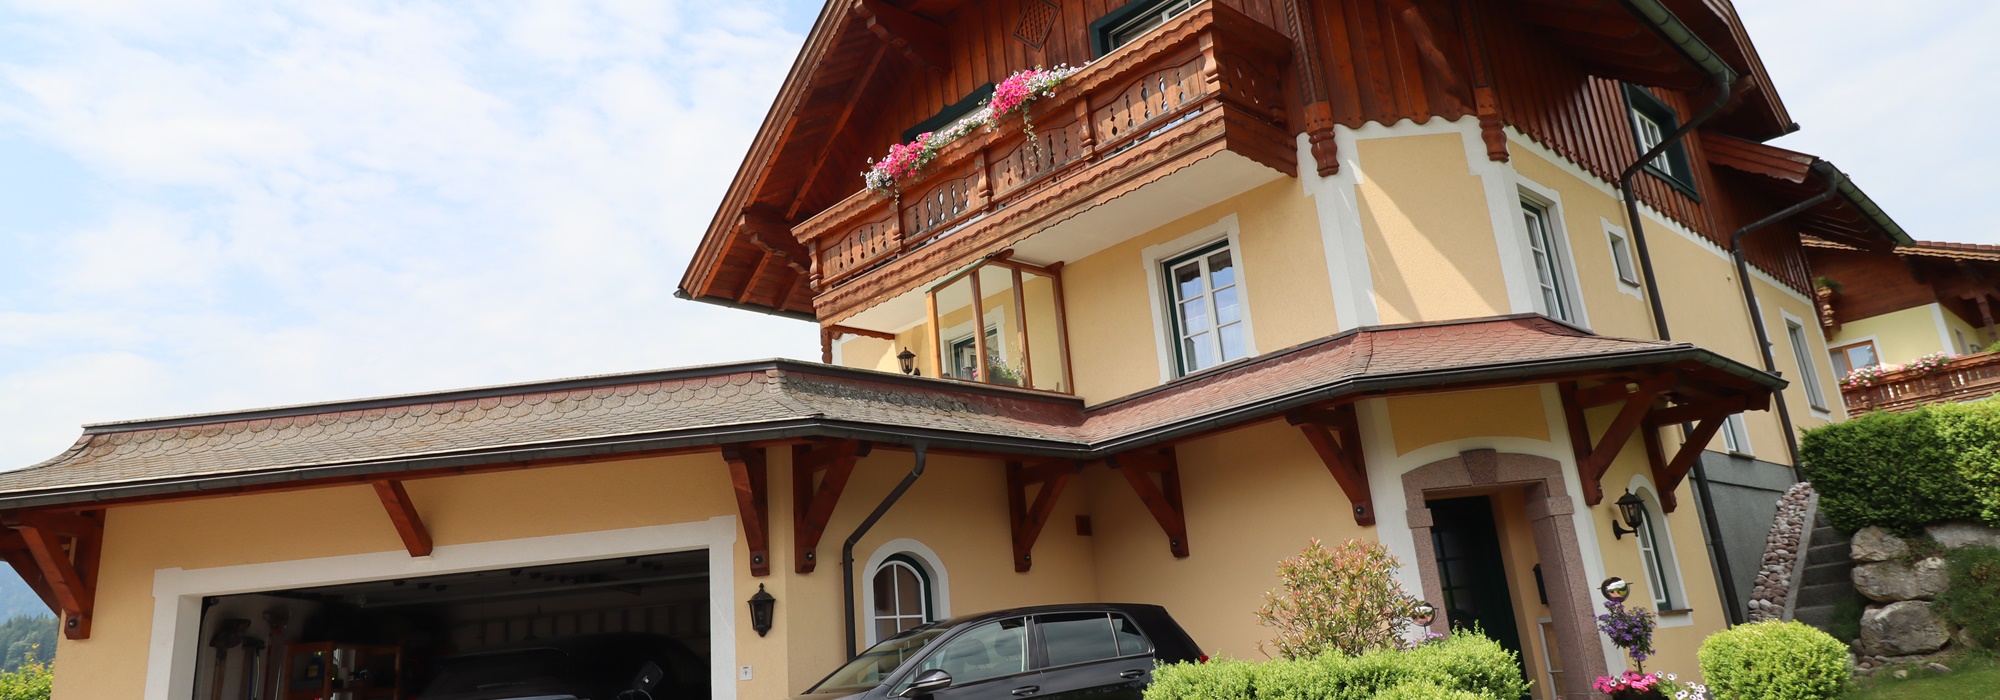 Wunderschönes Salzburger Landhaus in Bestform in leicht erhöhter Sonnenlage zu verkaufen